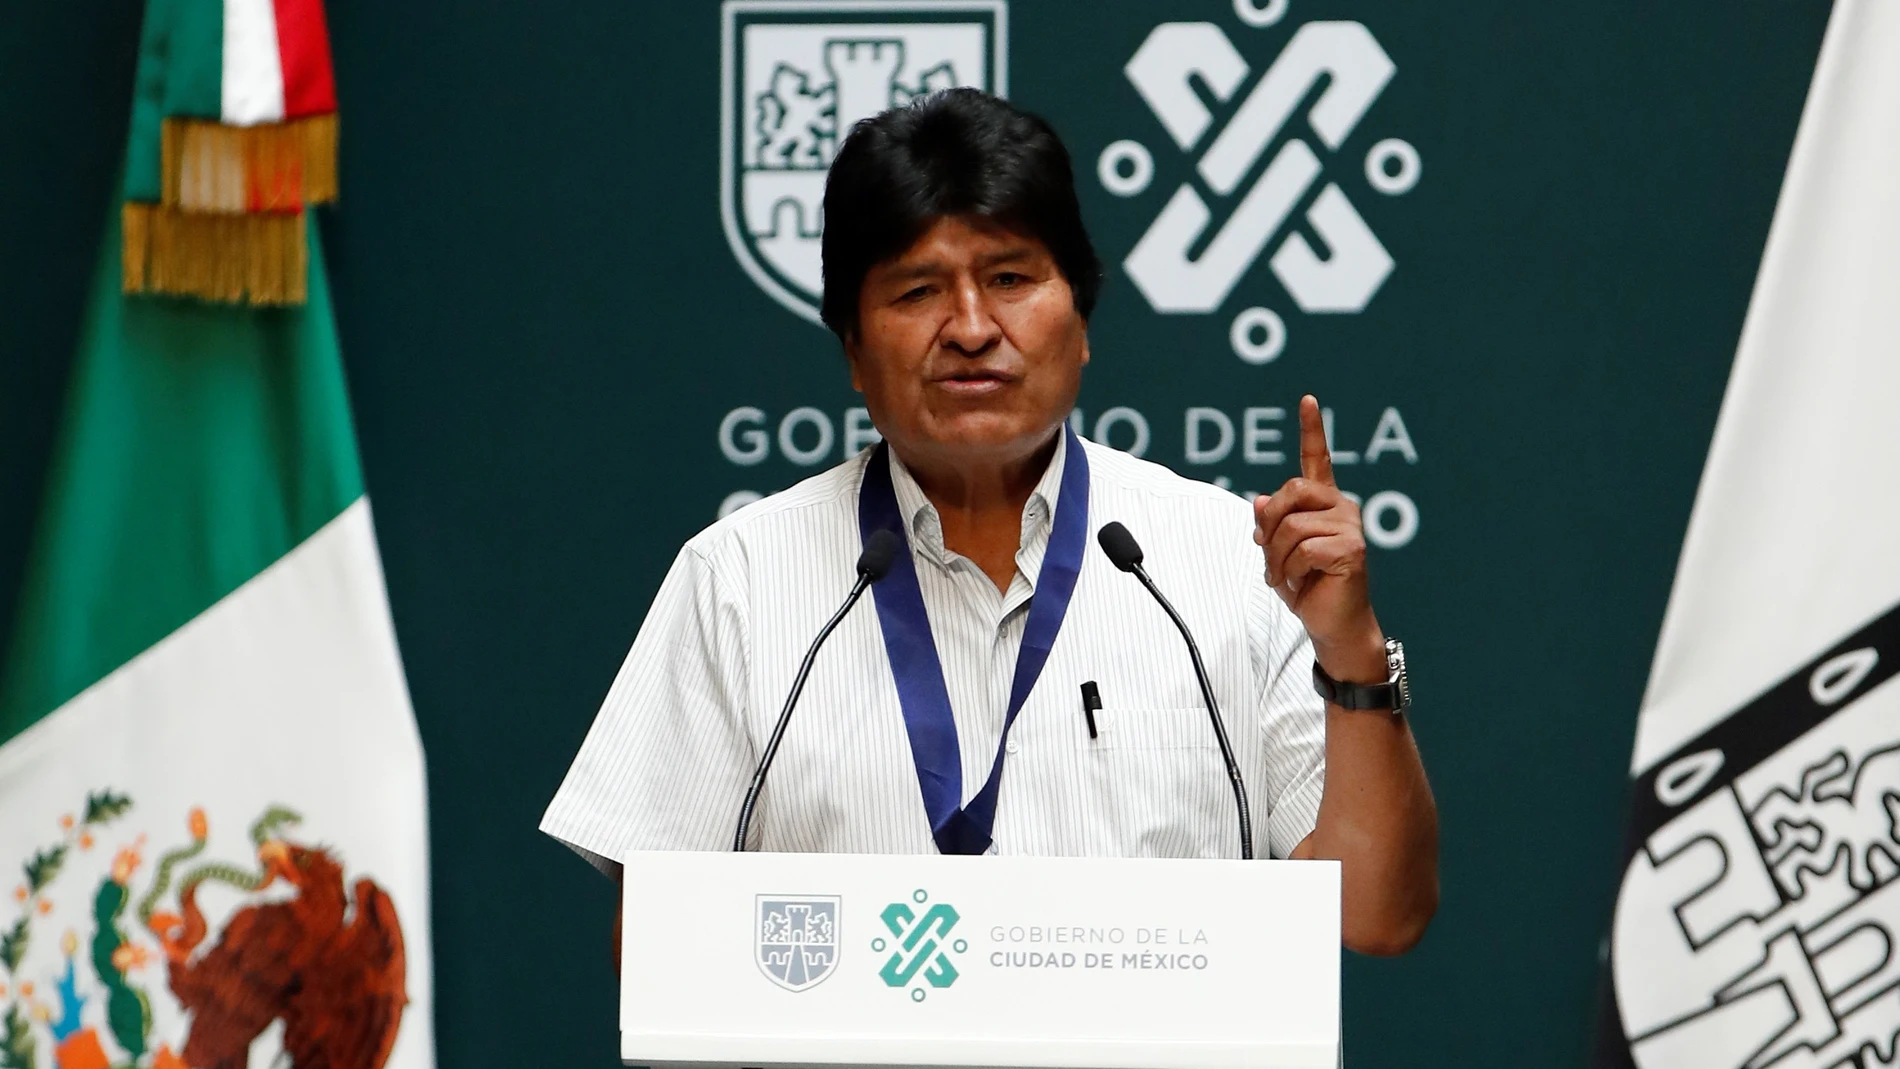 El expresidente de Bolivia, Evo Morales, durante un acto en Ciudad de México (México), en una imagen de archivo